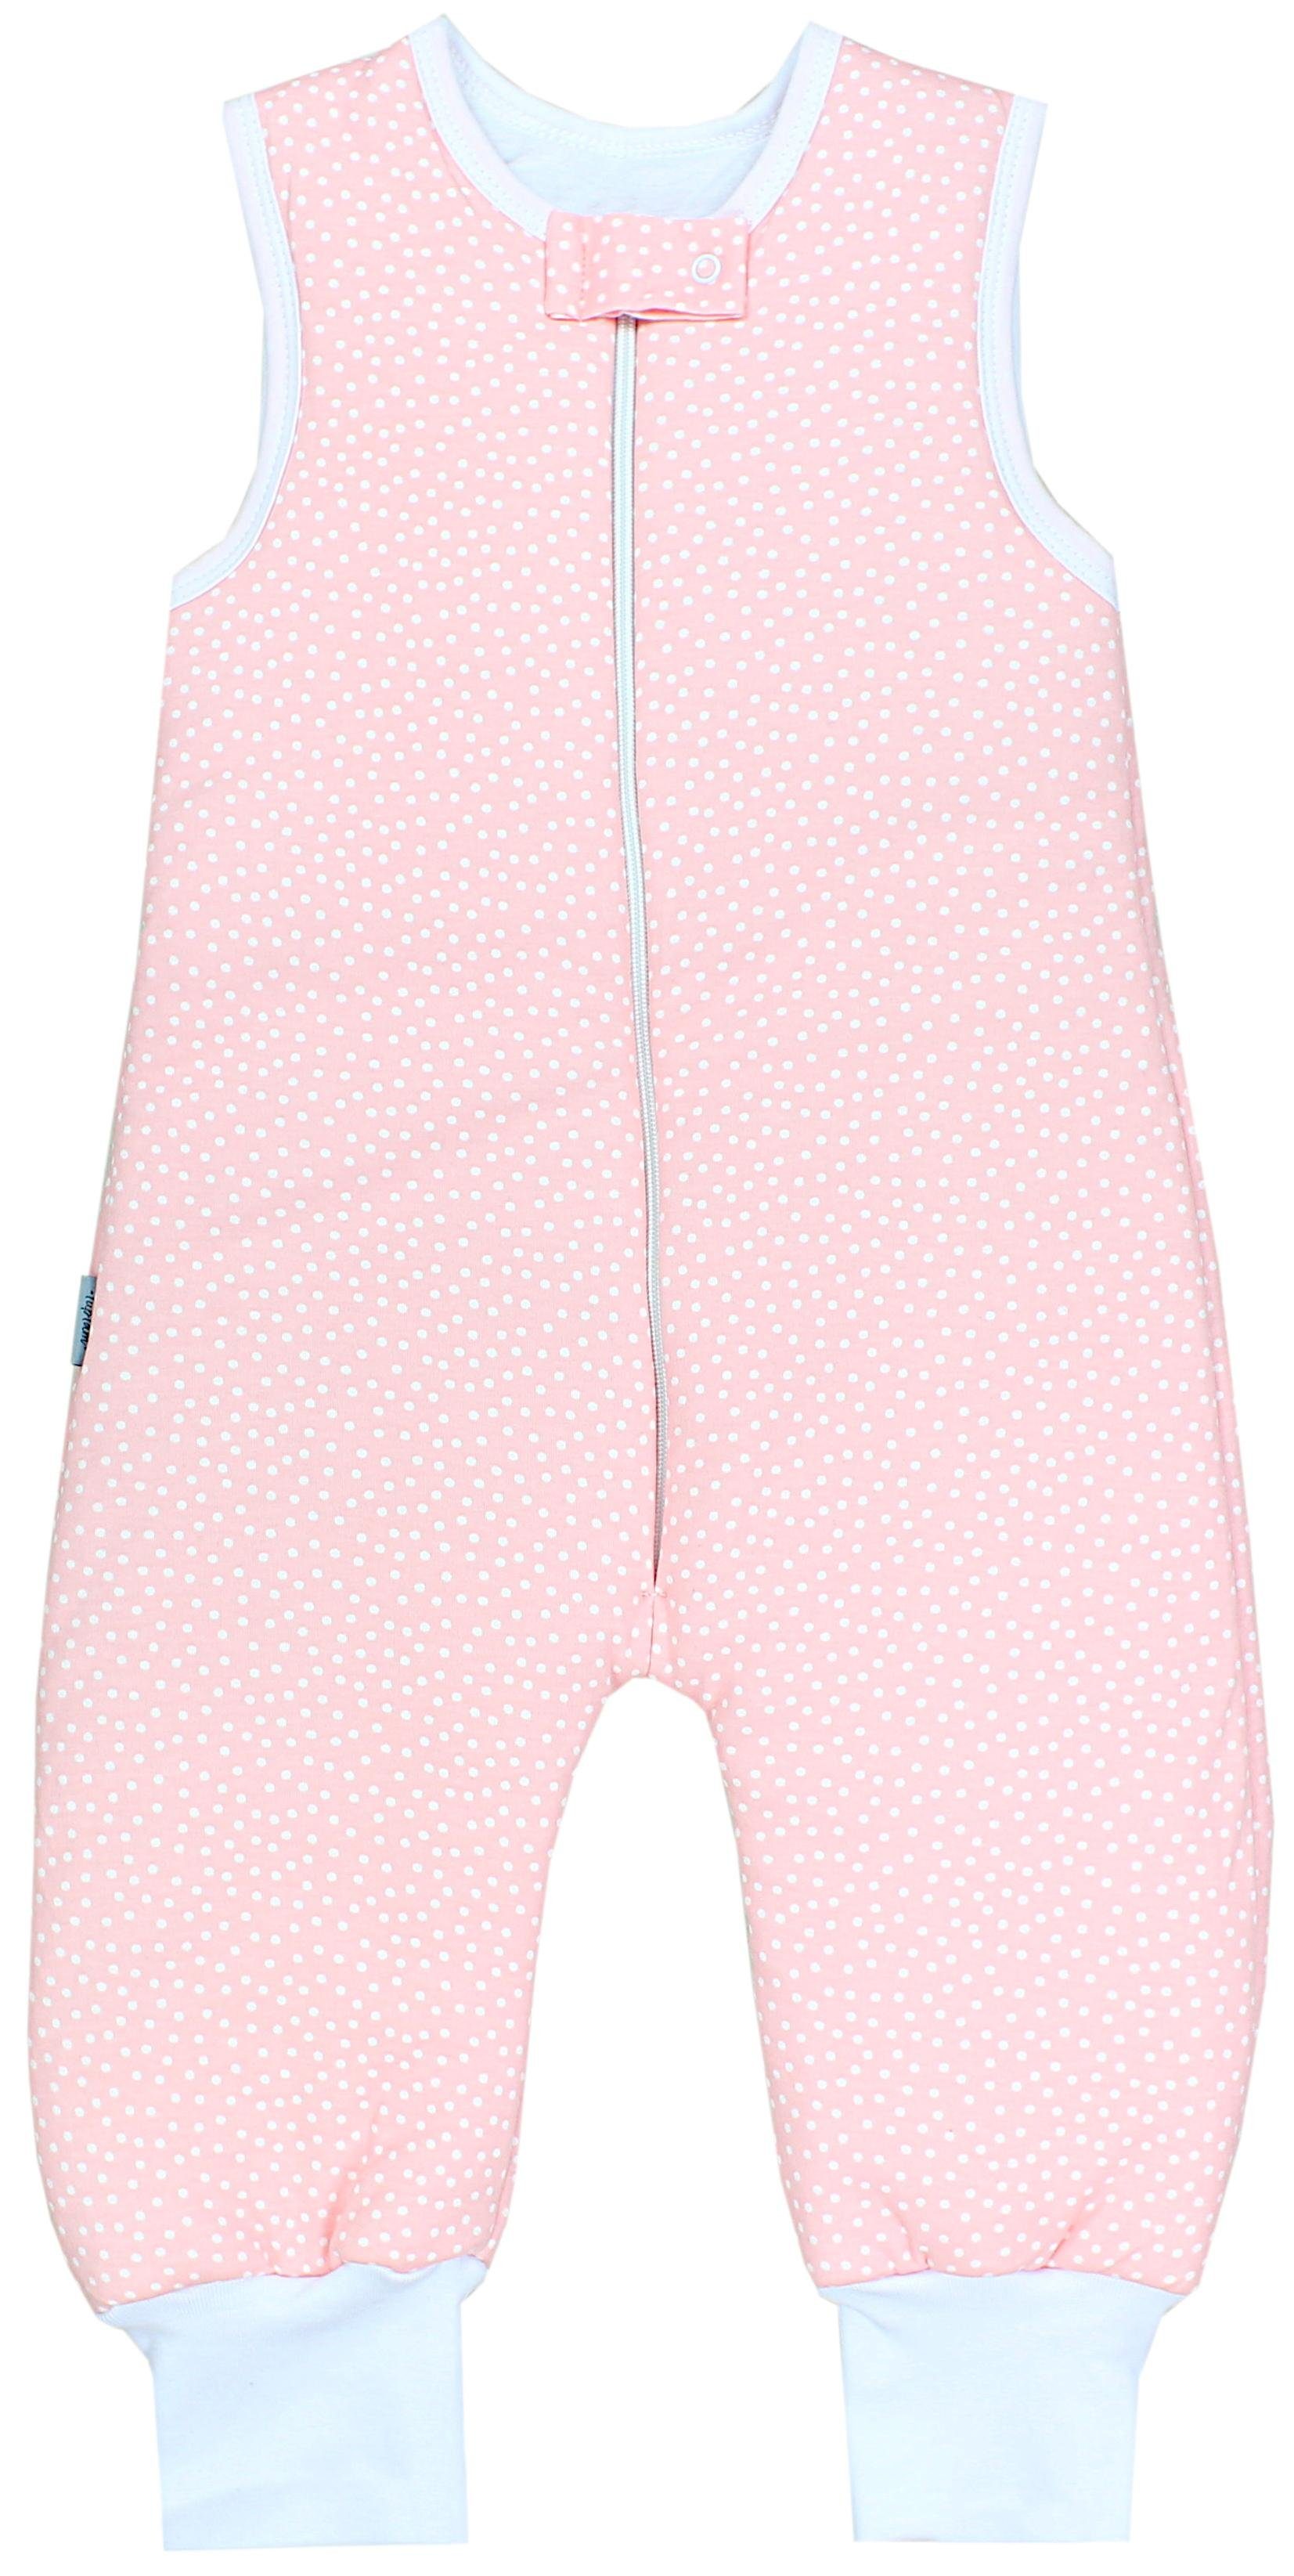 TupTam Babyschlafsack Winter Schlafsack mit Beinen OEKO-TEX zertifiziert 2,5 TOG Unisex Tupfen Rosa